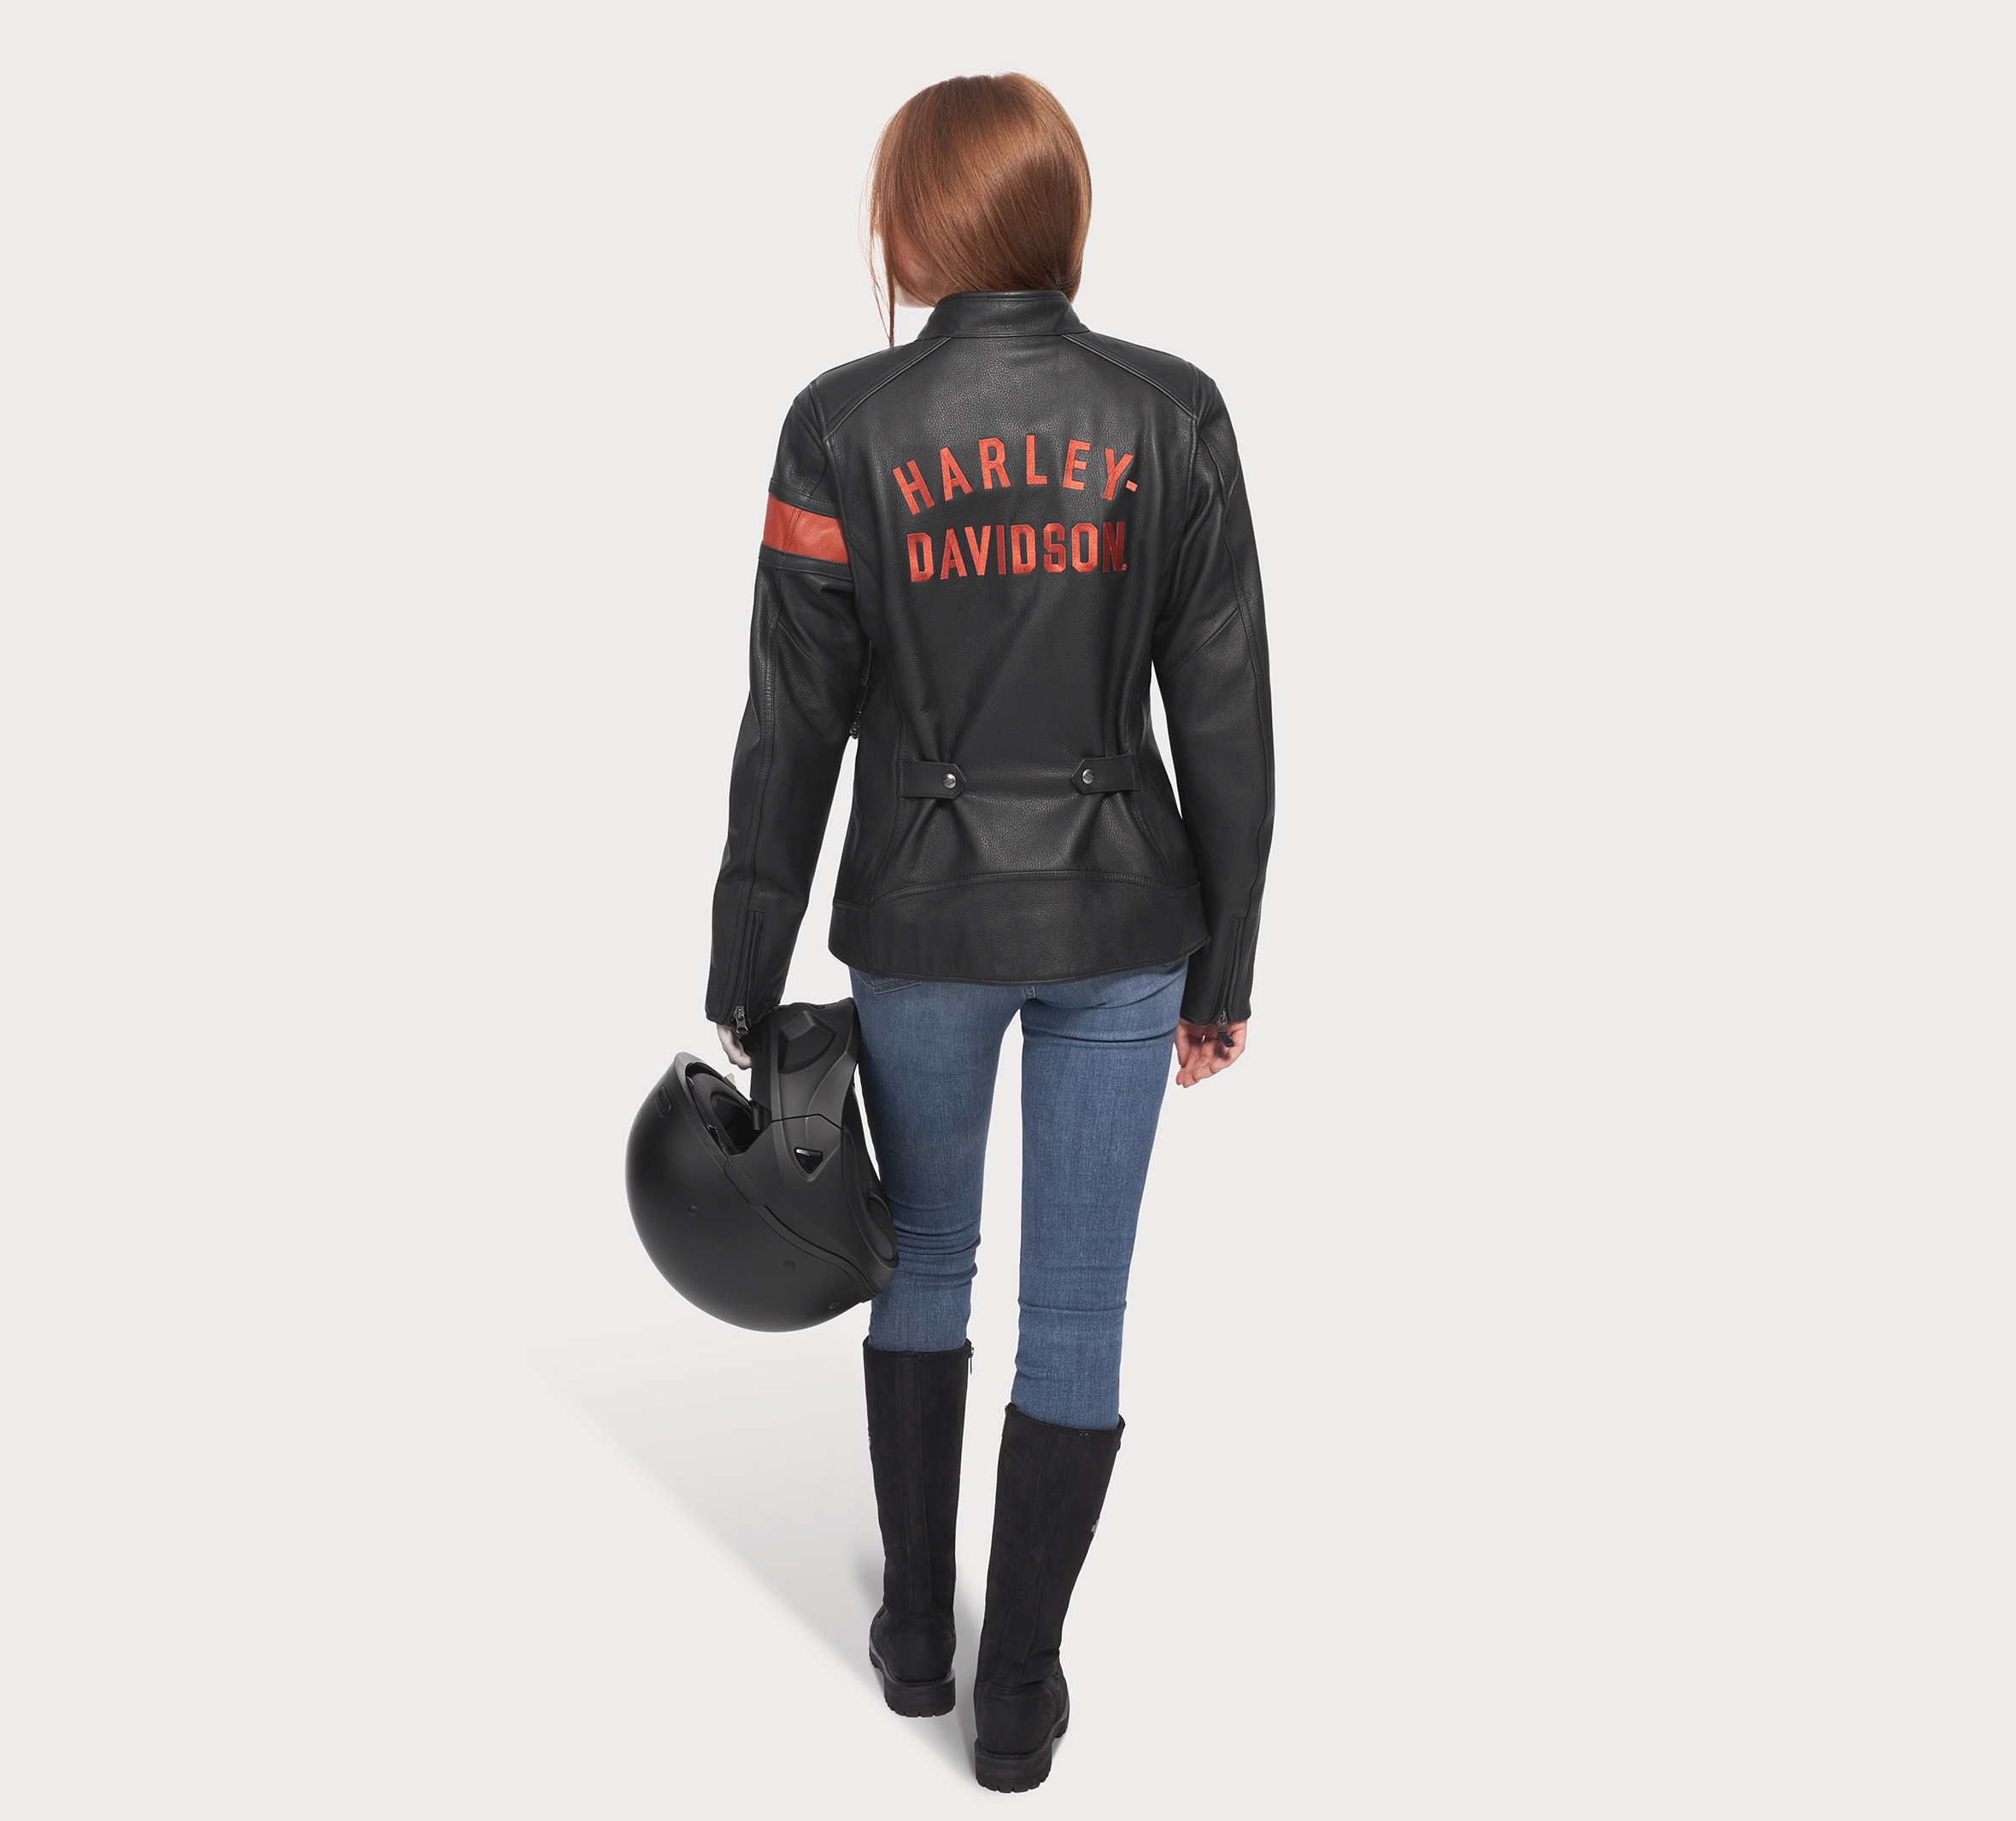 Harley Davidson Leather Jacket plandetransformacion.unirioja.es